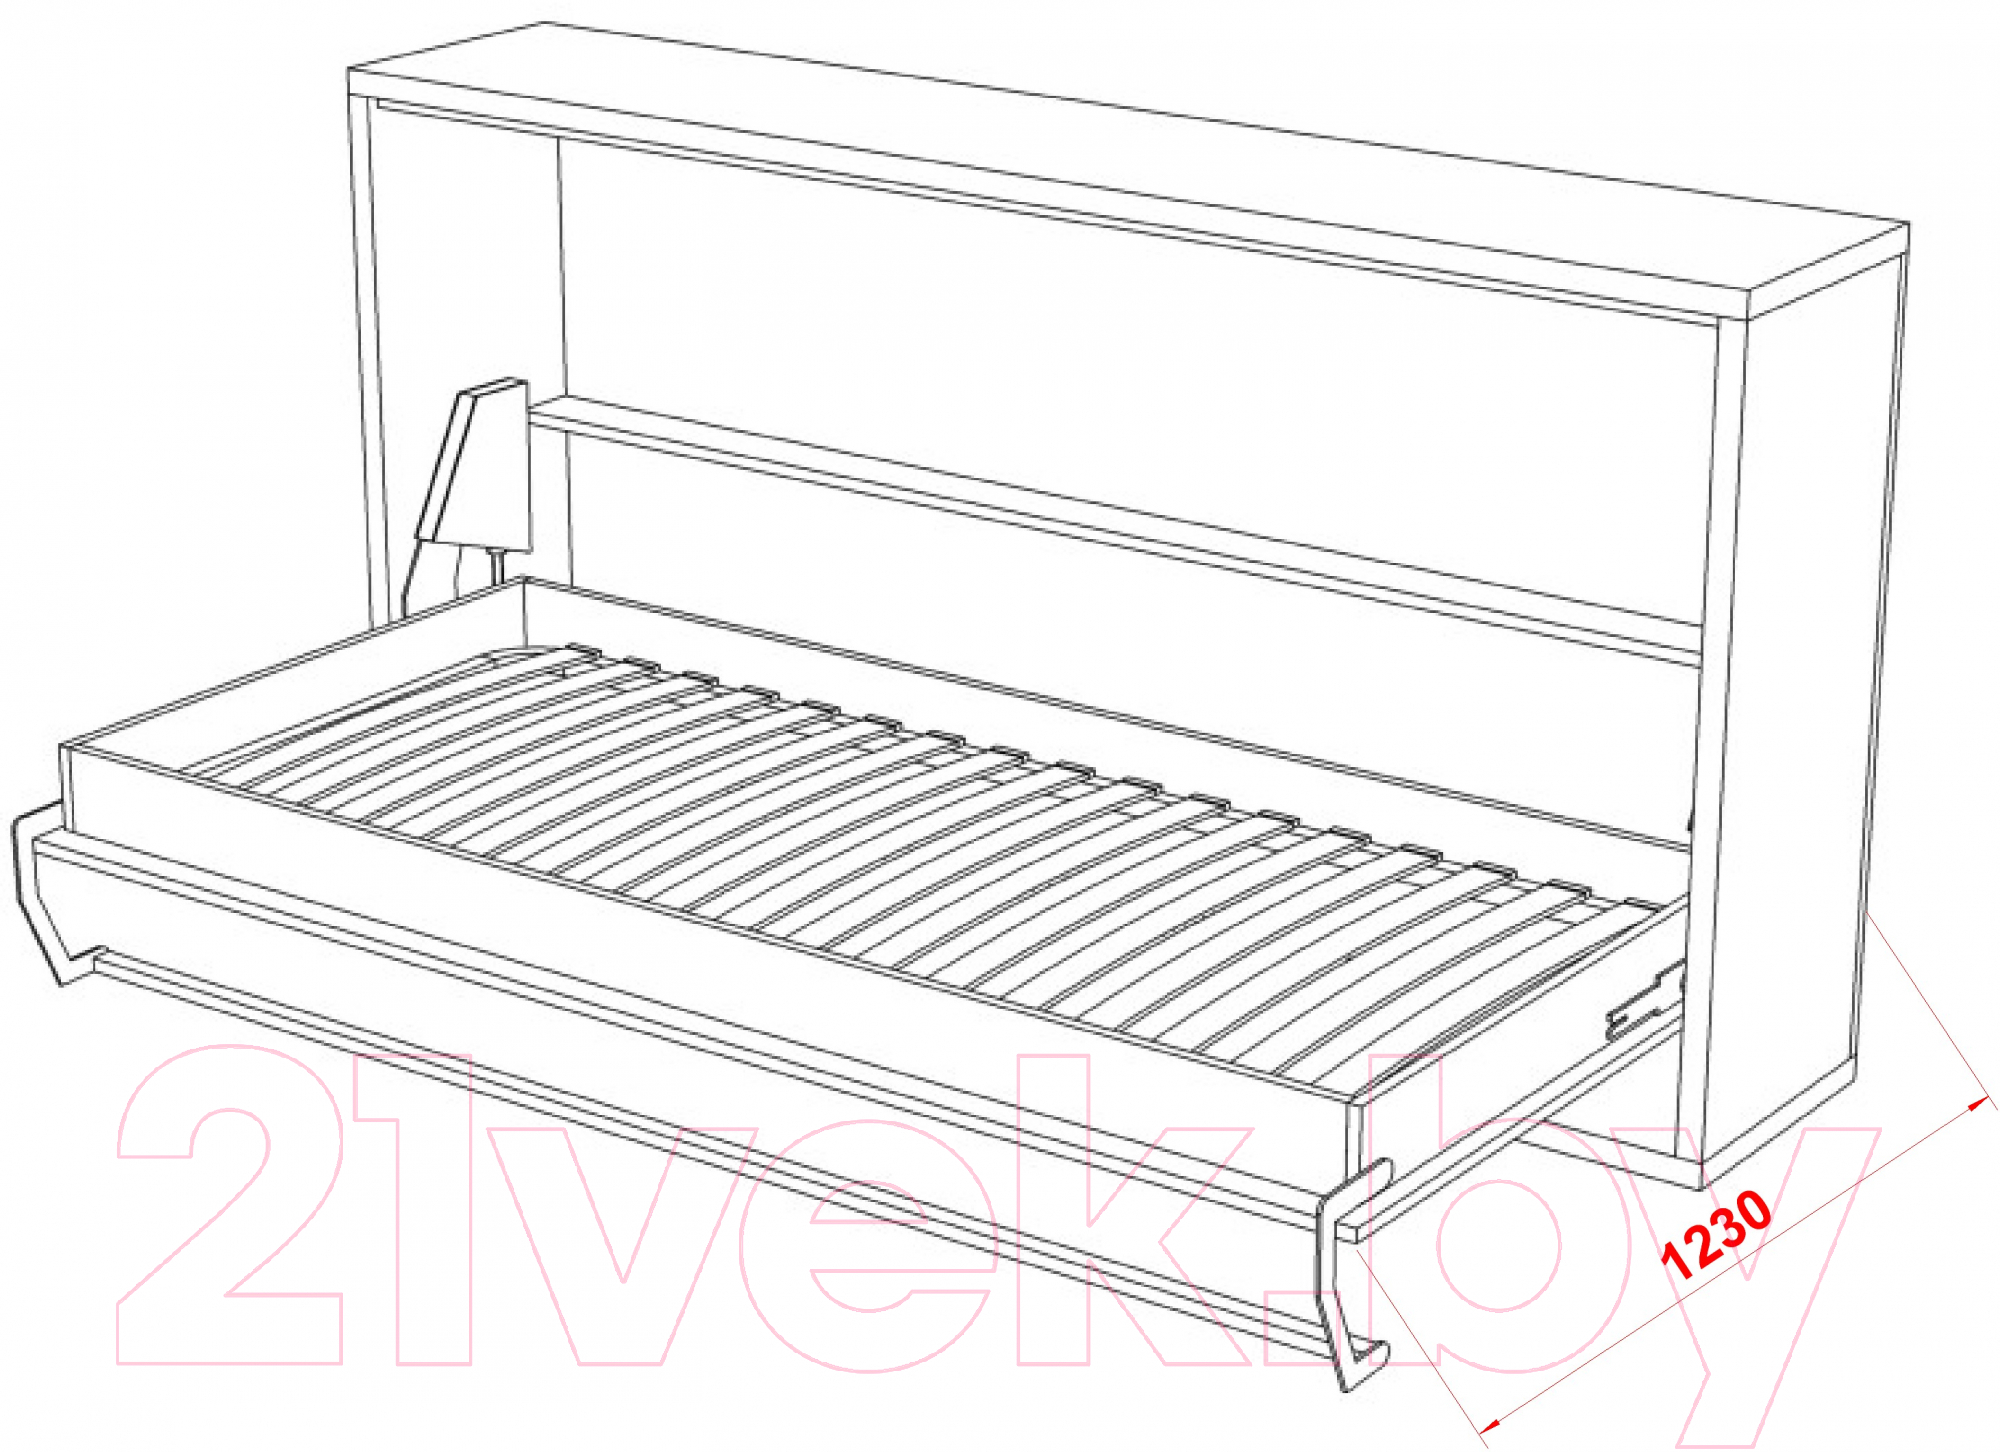 Шкаф-кровать трансформер Макс Стайл Wave 36мм 90x200 (светло-серый U708 ST9)